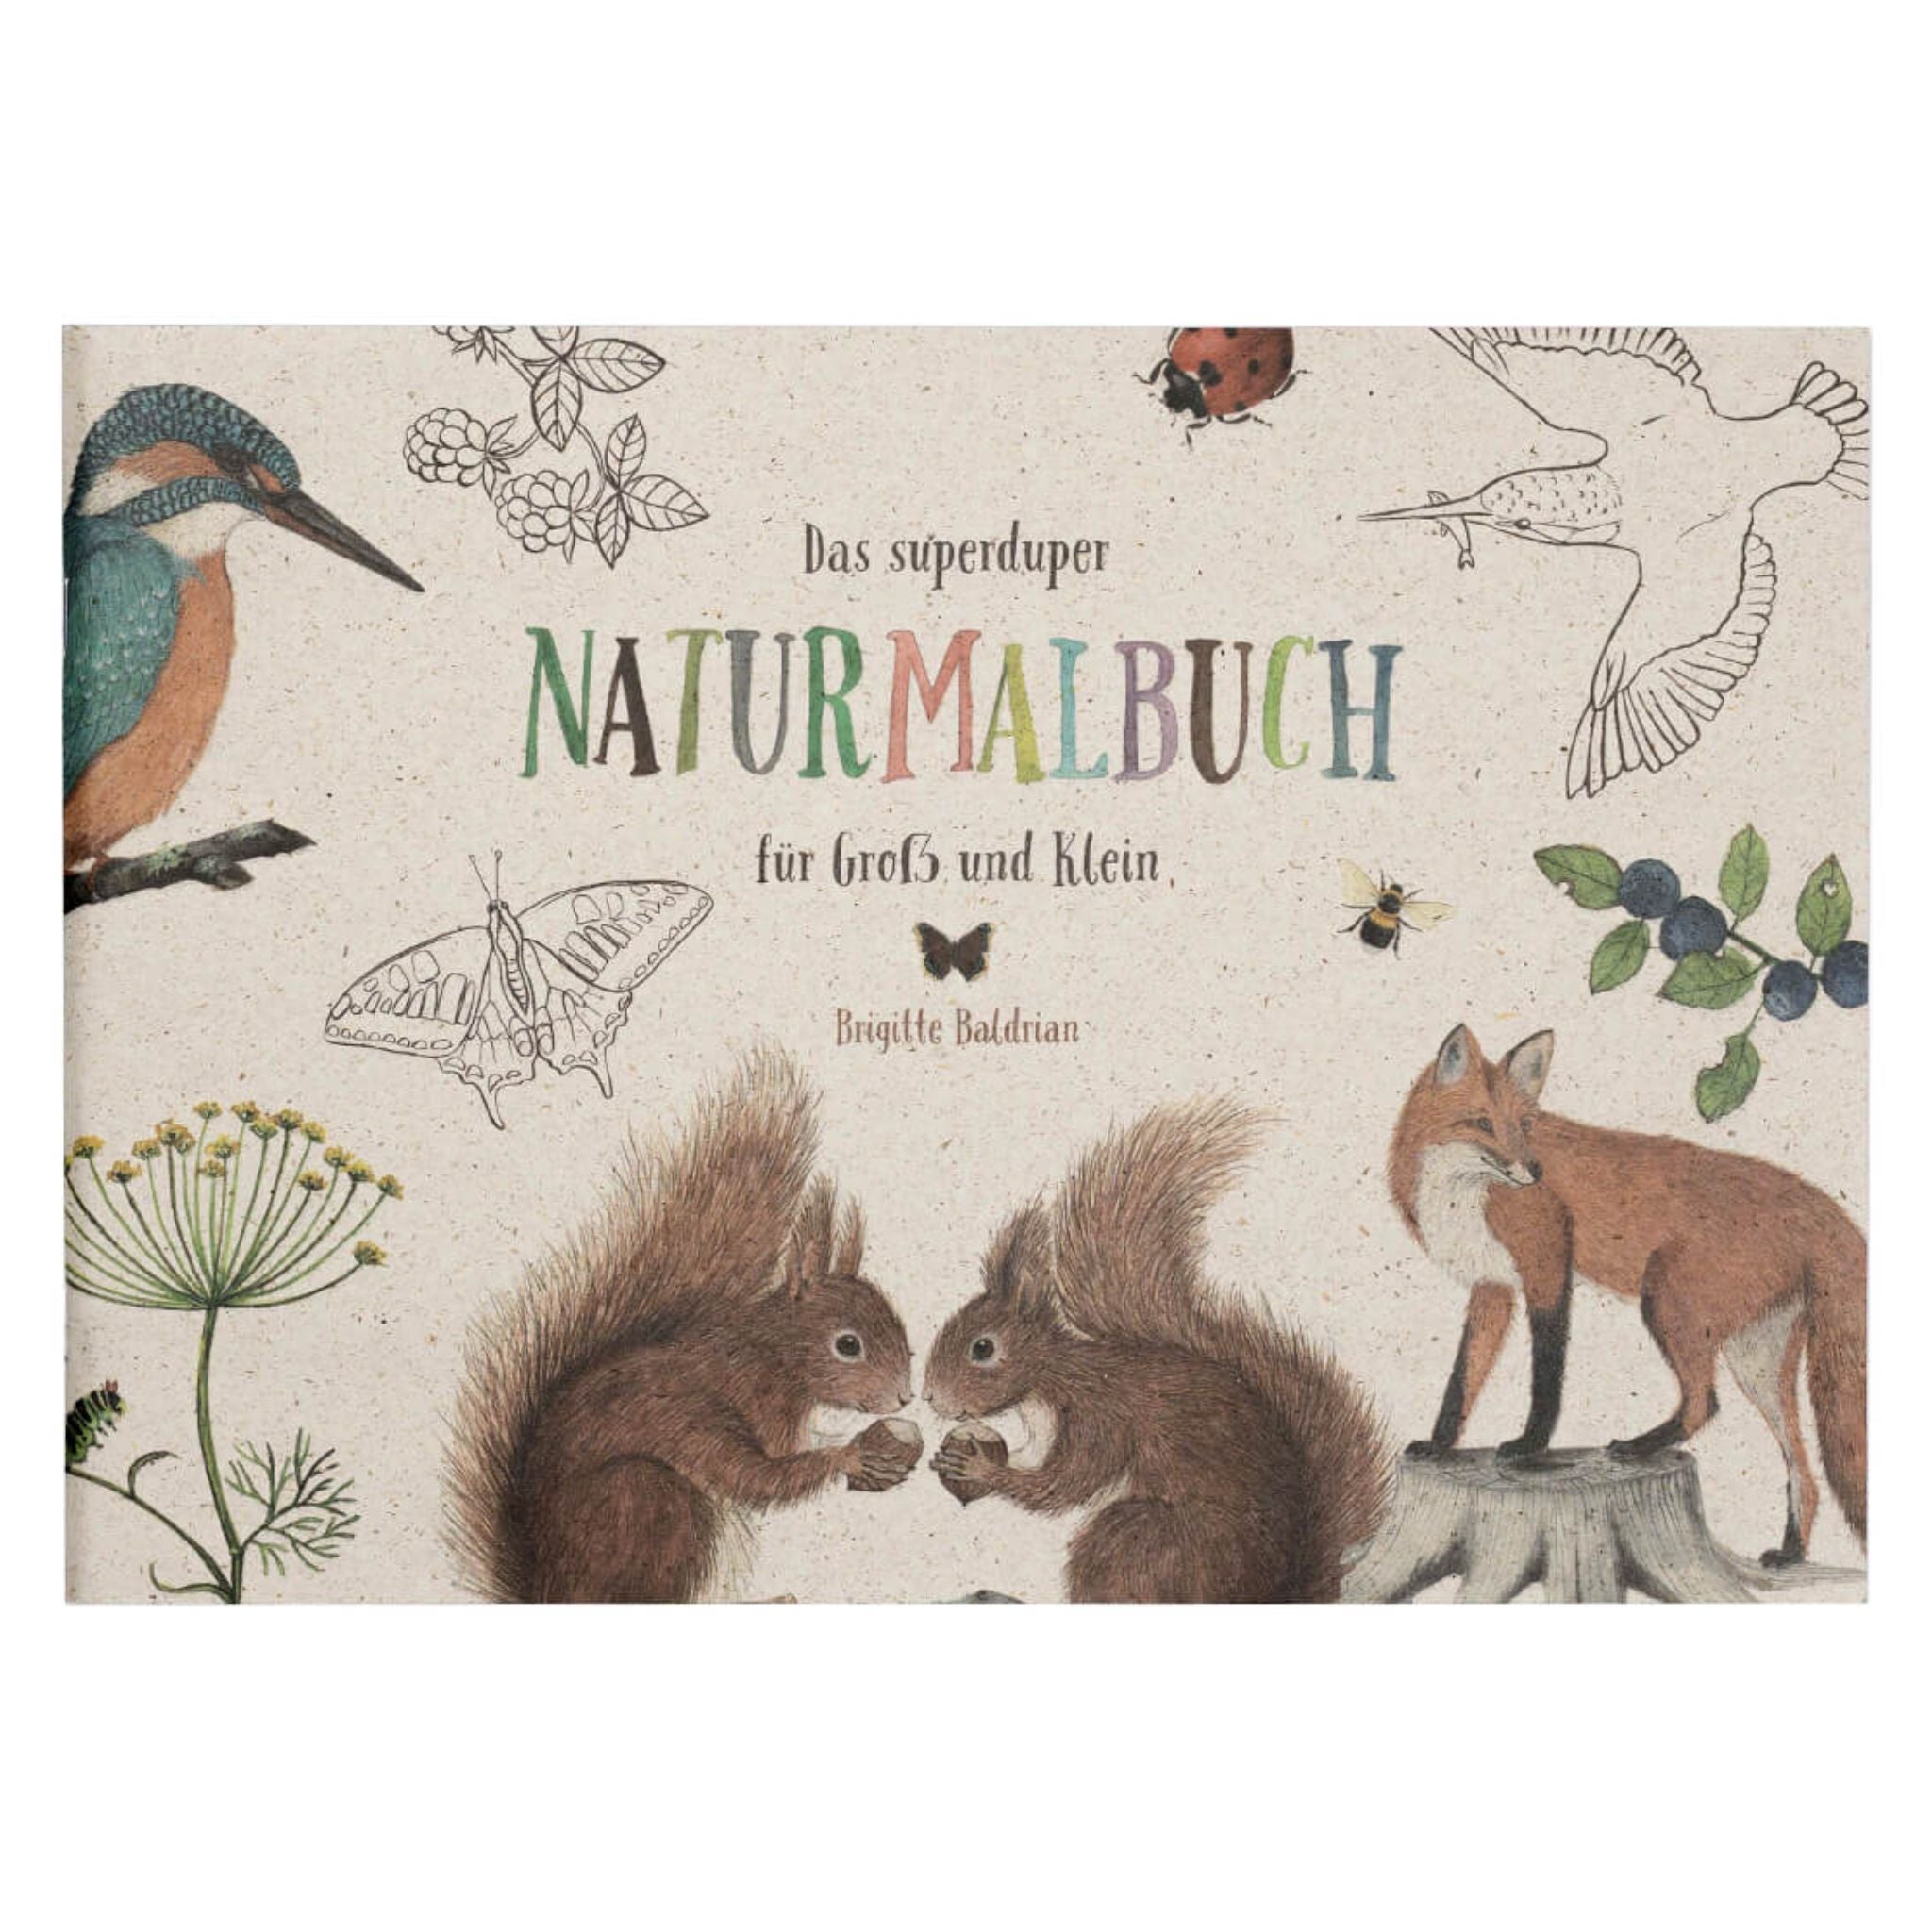 Naturmalbuch mit heimischen Tieren und Pflanzen